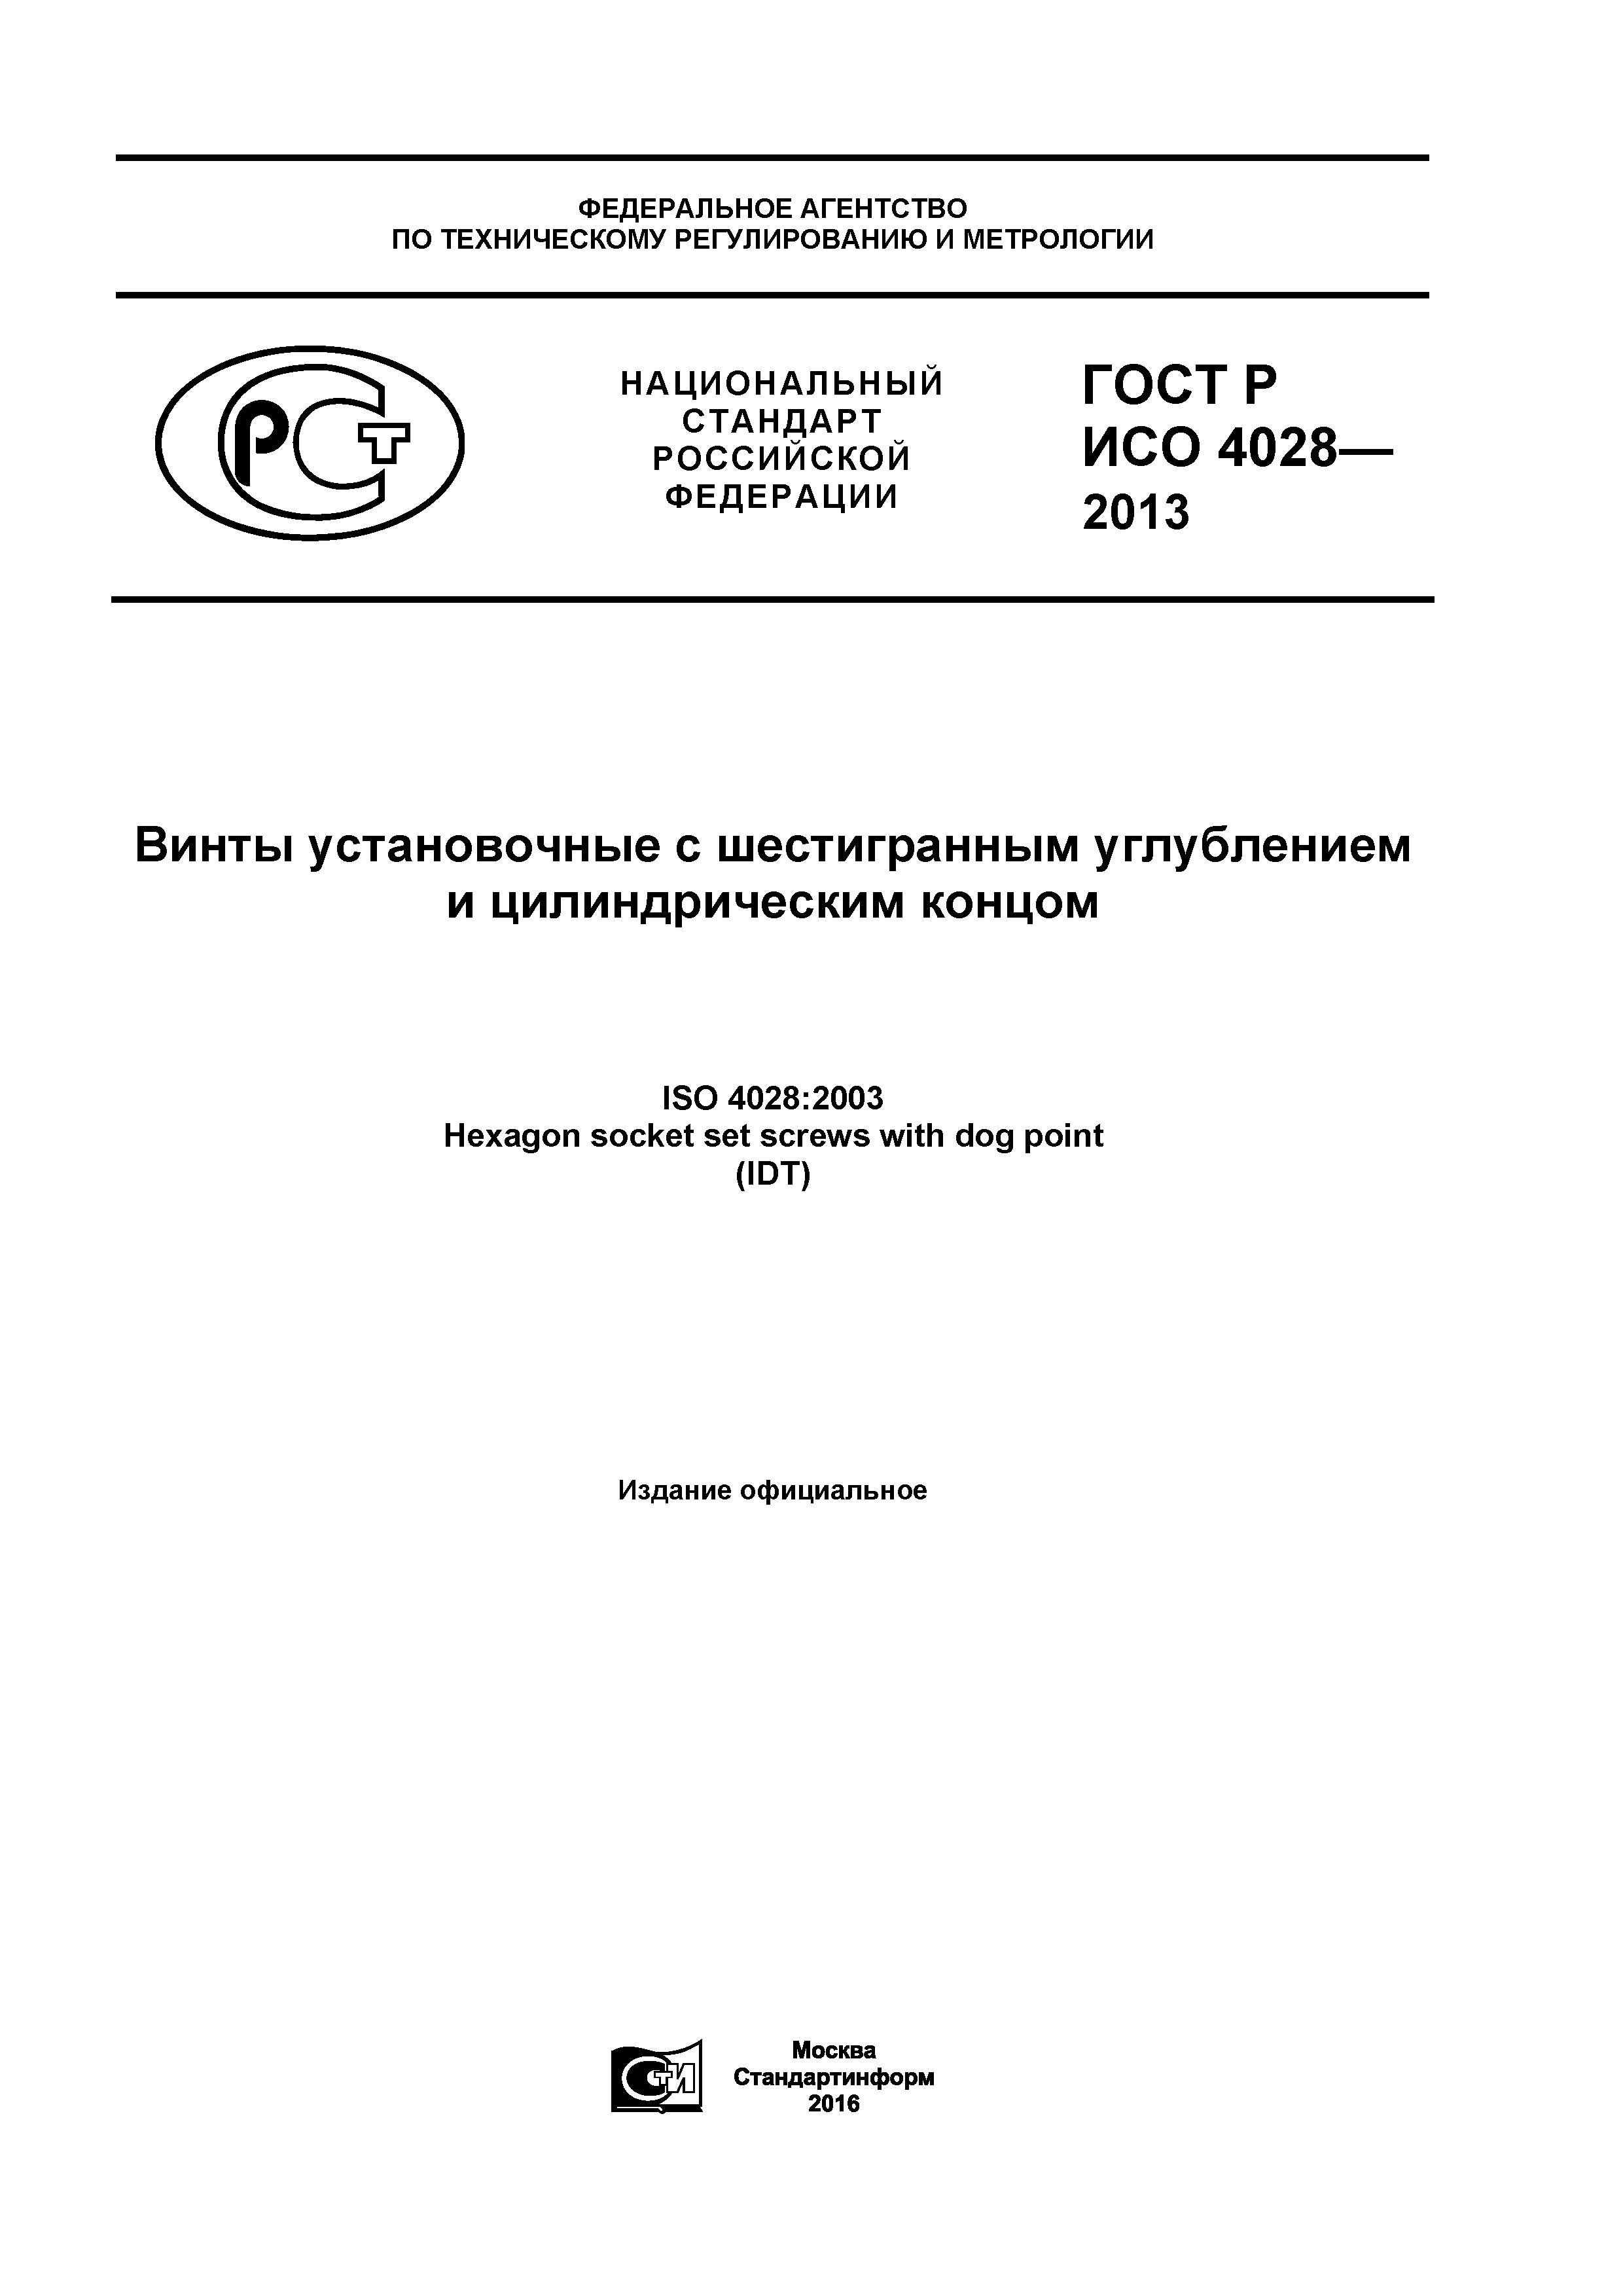 ГОСТ Р ИСО 4028-2013